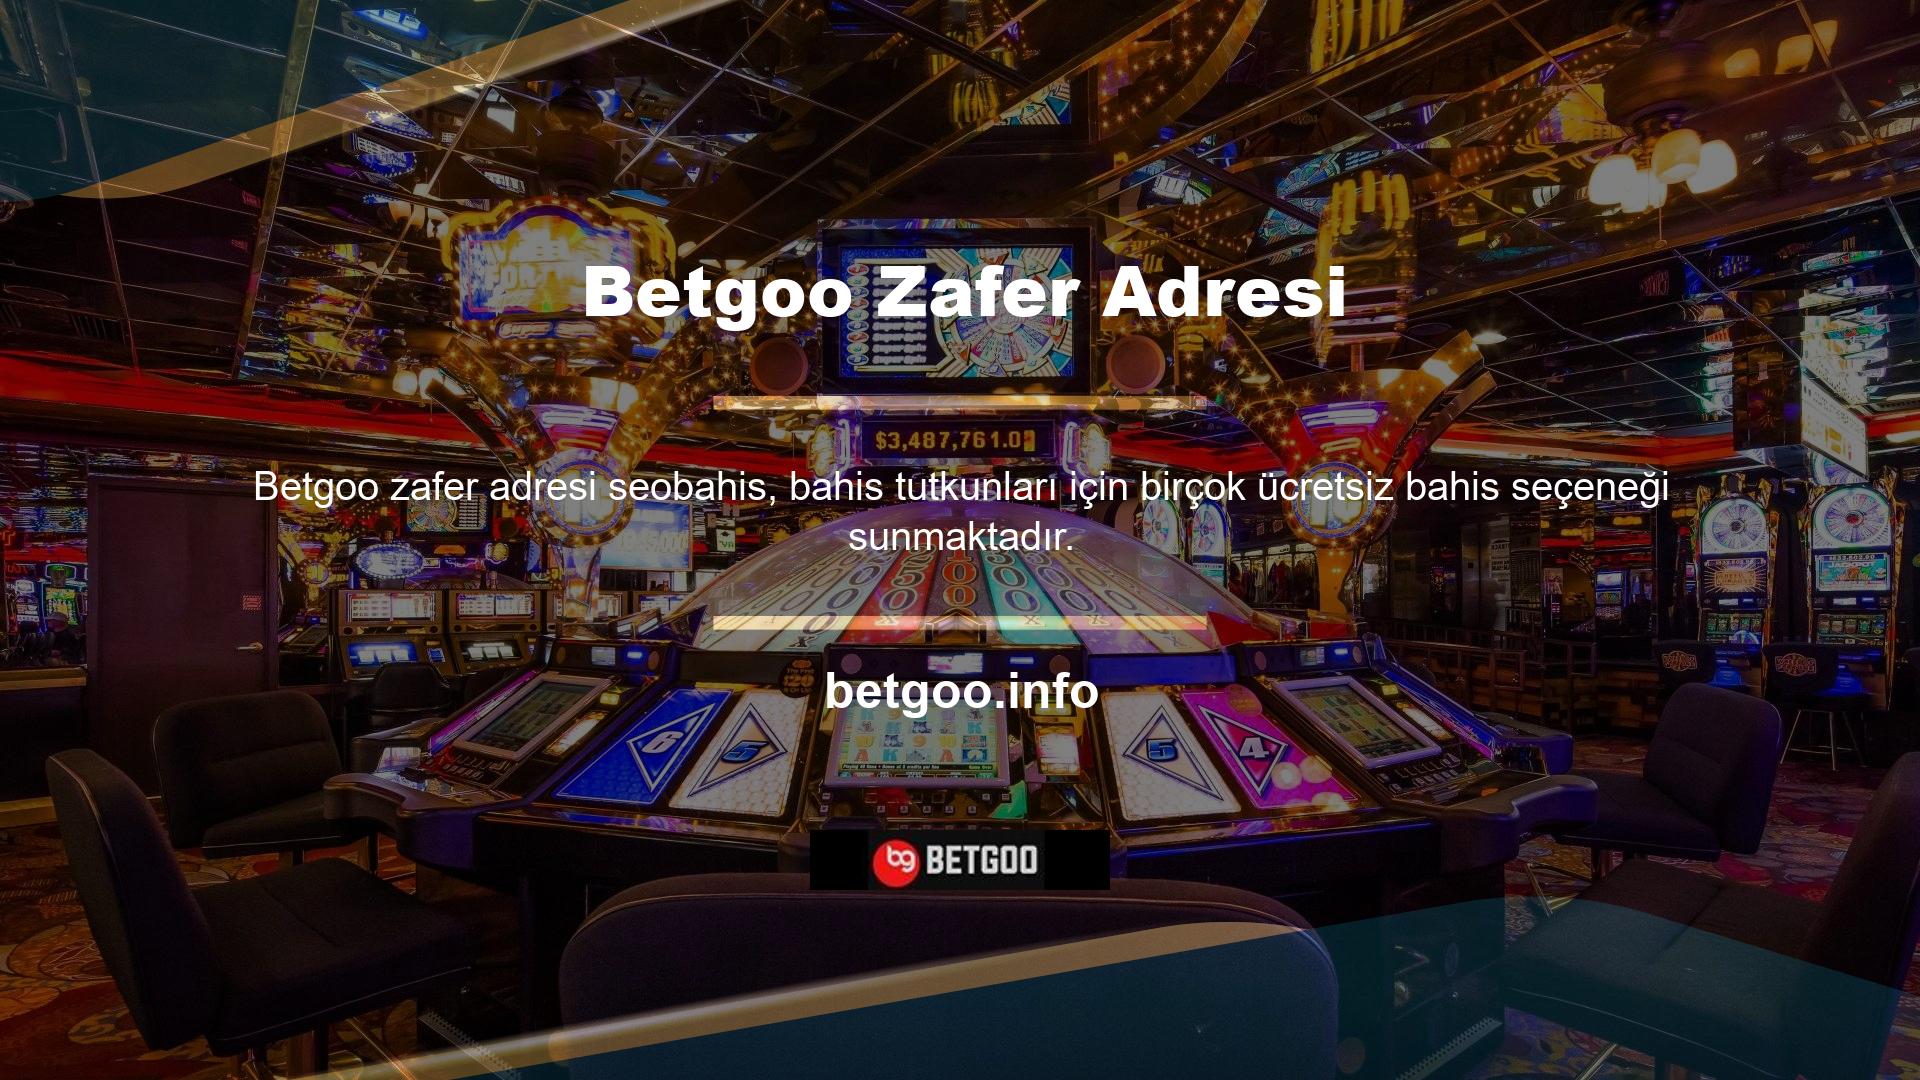 Betgoo, özellikle yeni web sitelerinde inanılmaz bir başarı oranına sahip